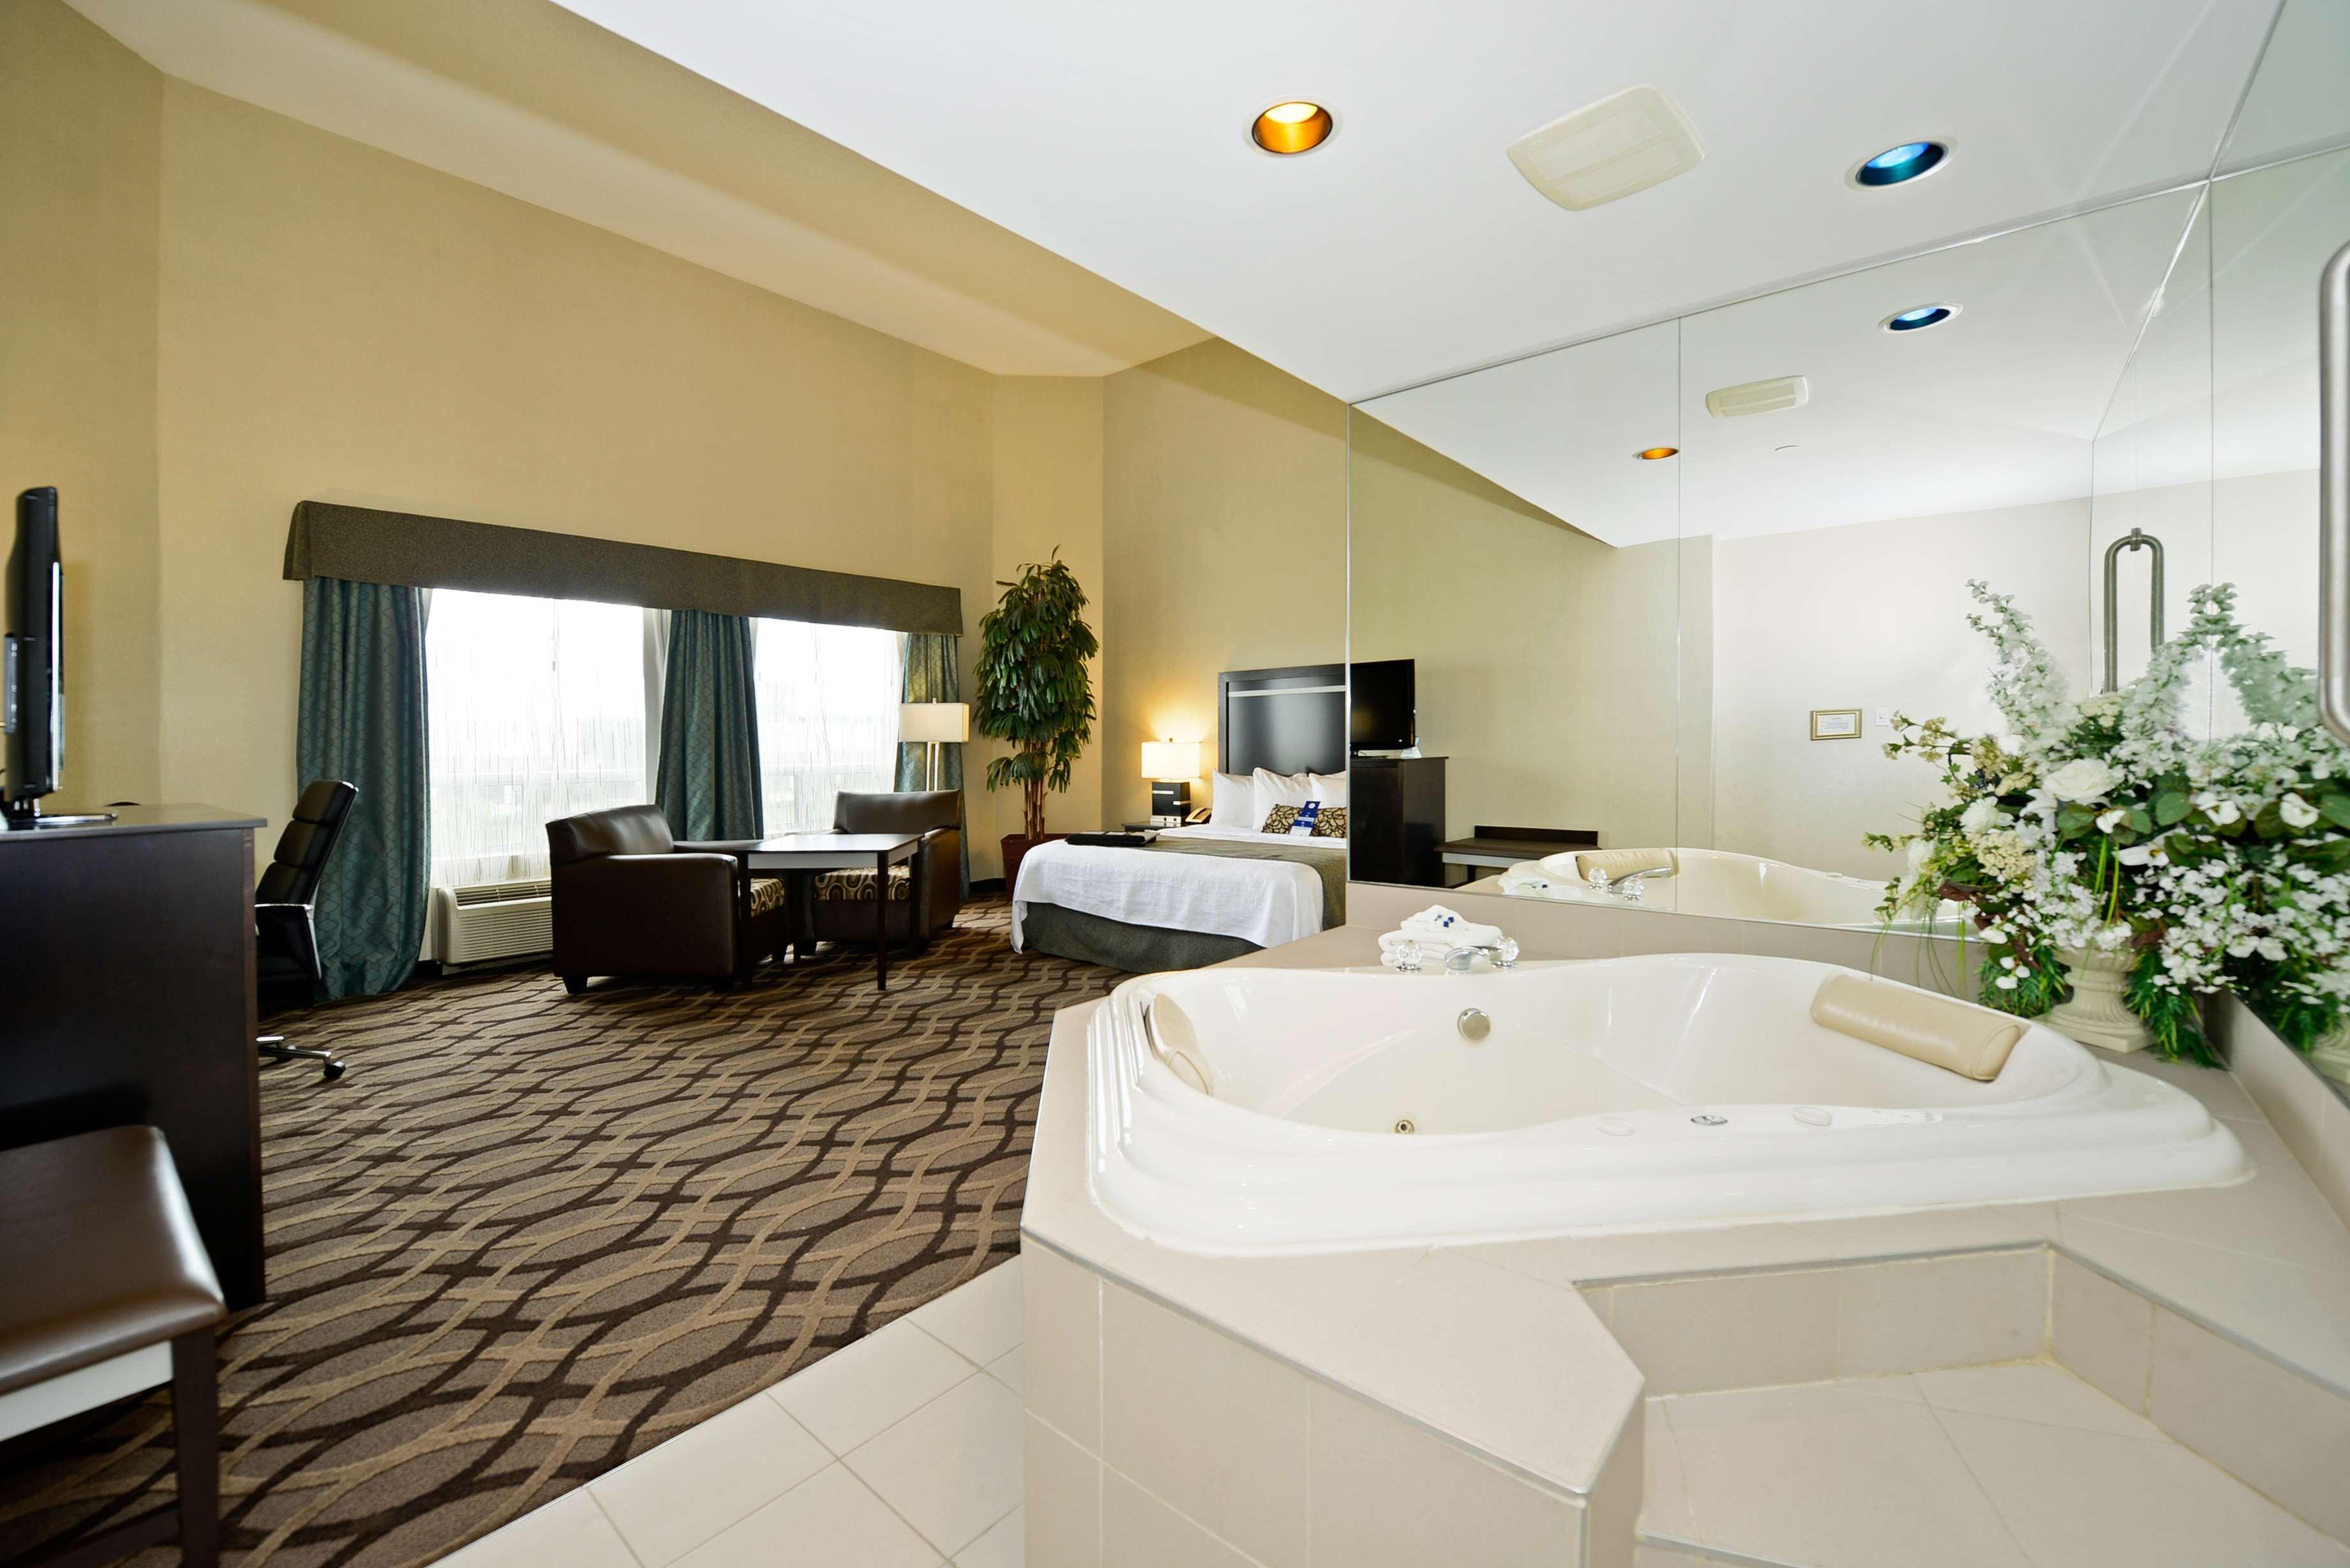 Best Western Plus Travel Hotel Toronto Airport Zimmer foto